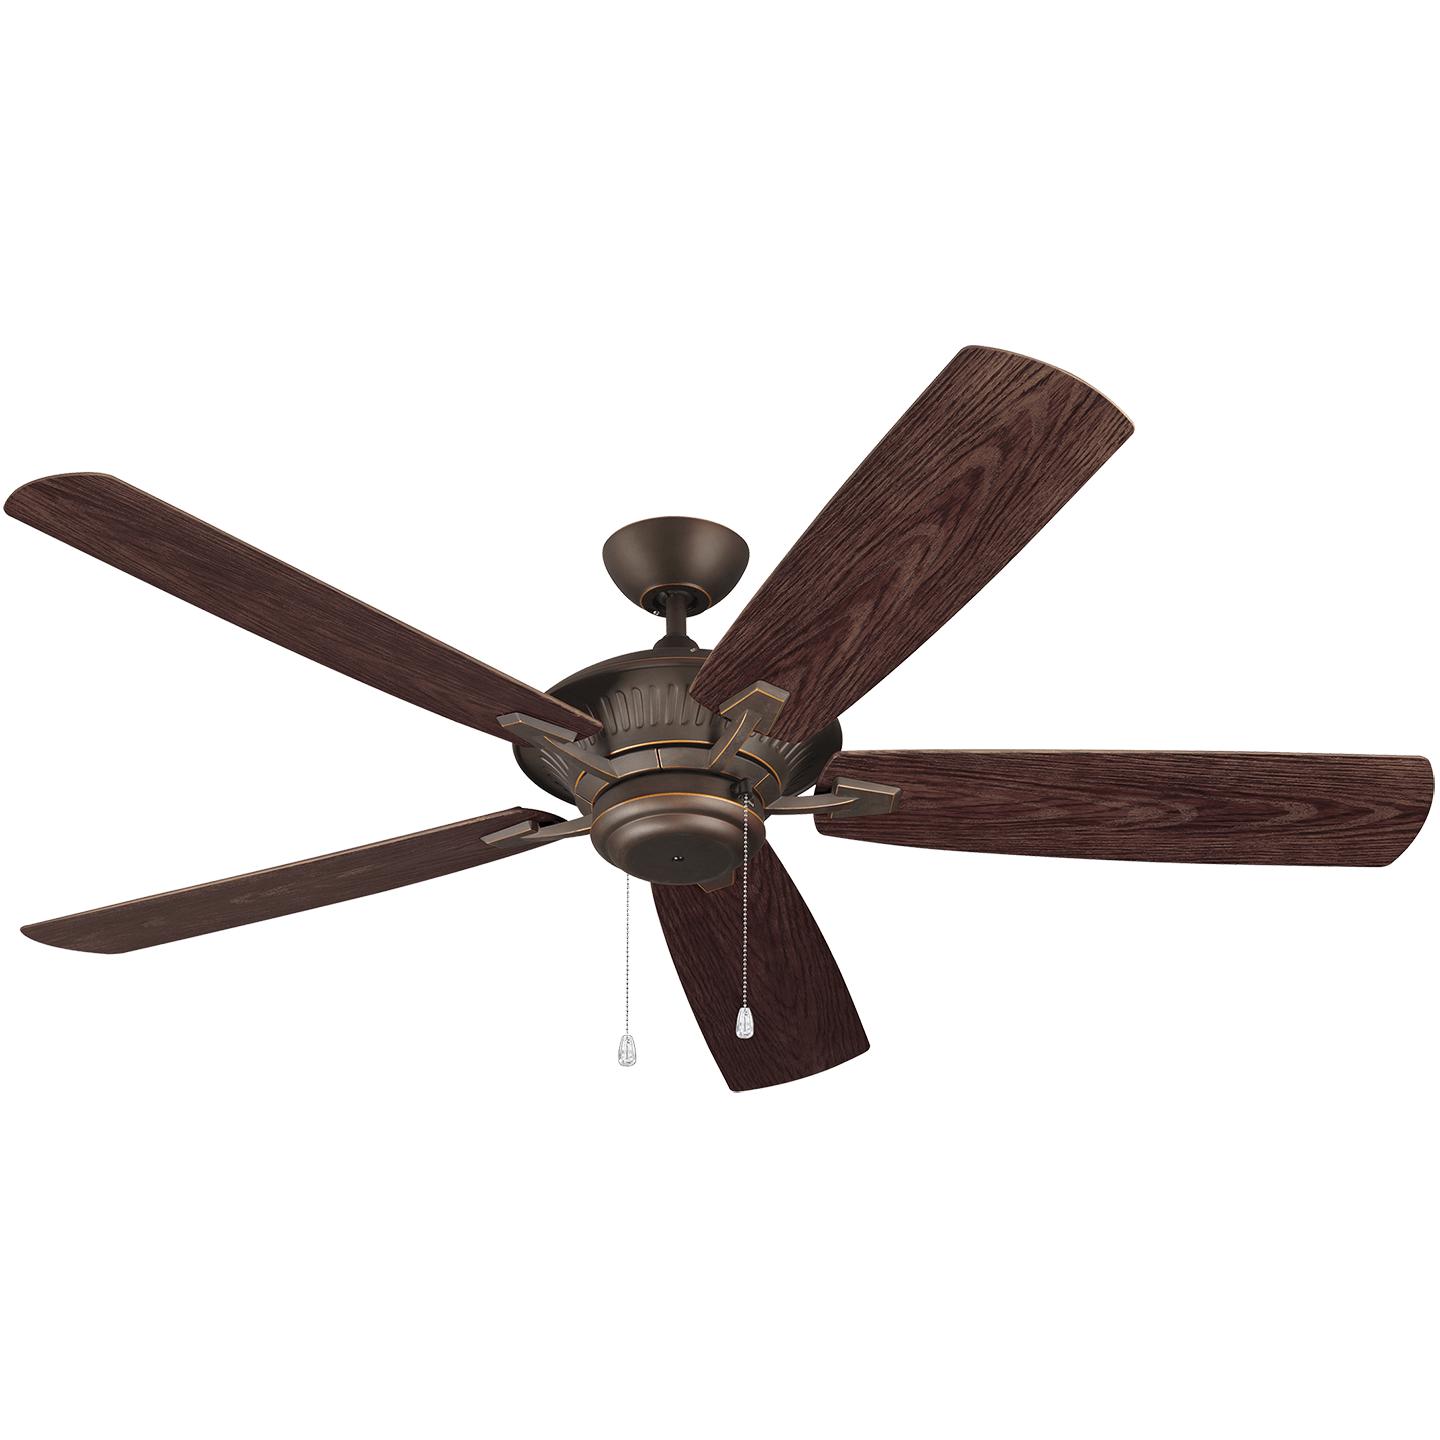 Купить Потолочный вентилятор Cyclone 60" Outdoor Ceiling Fan в интернет-магазине roooms.ru